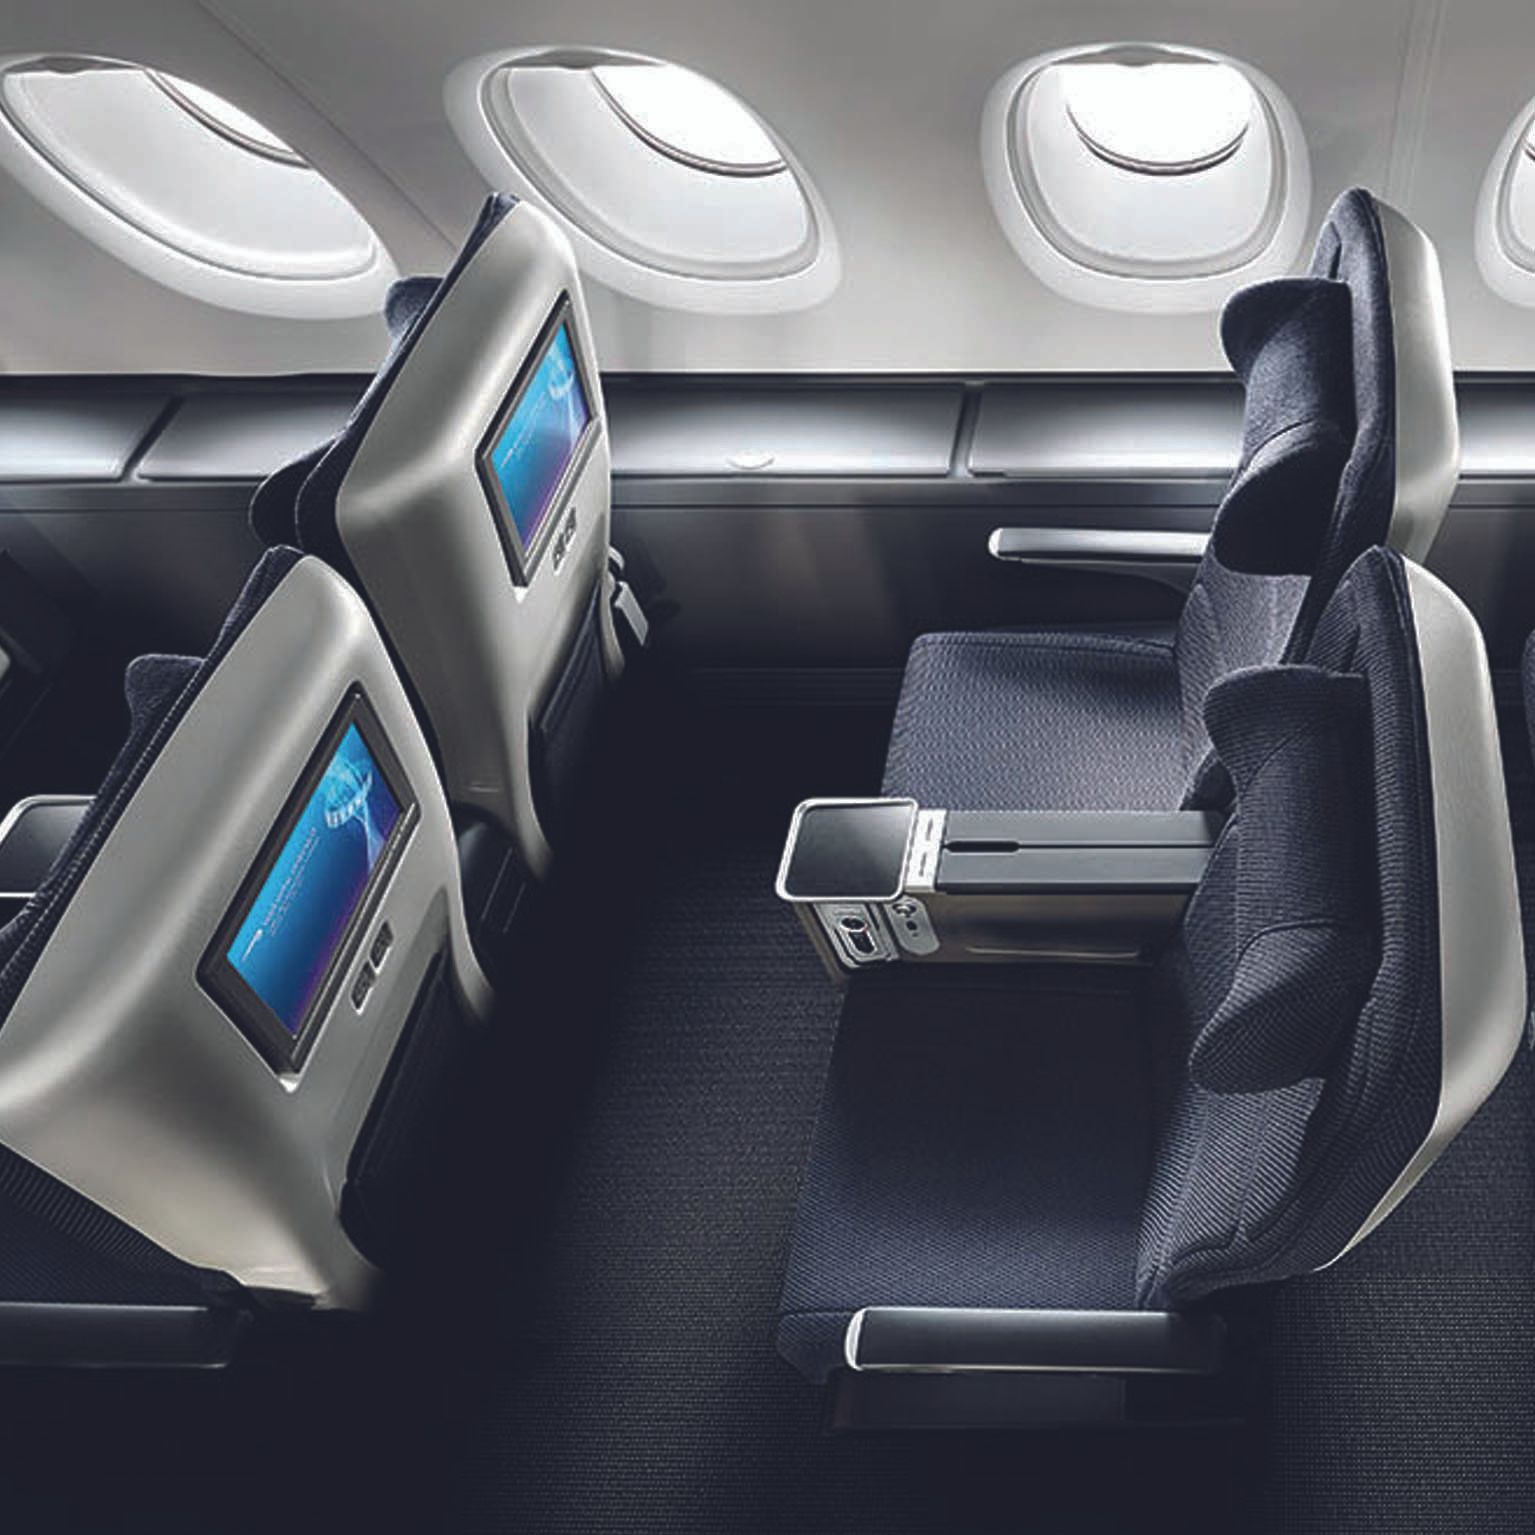 Inside the British Airways premium economy cabin.